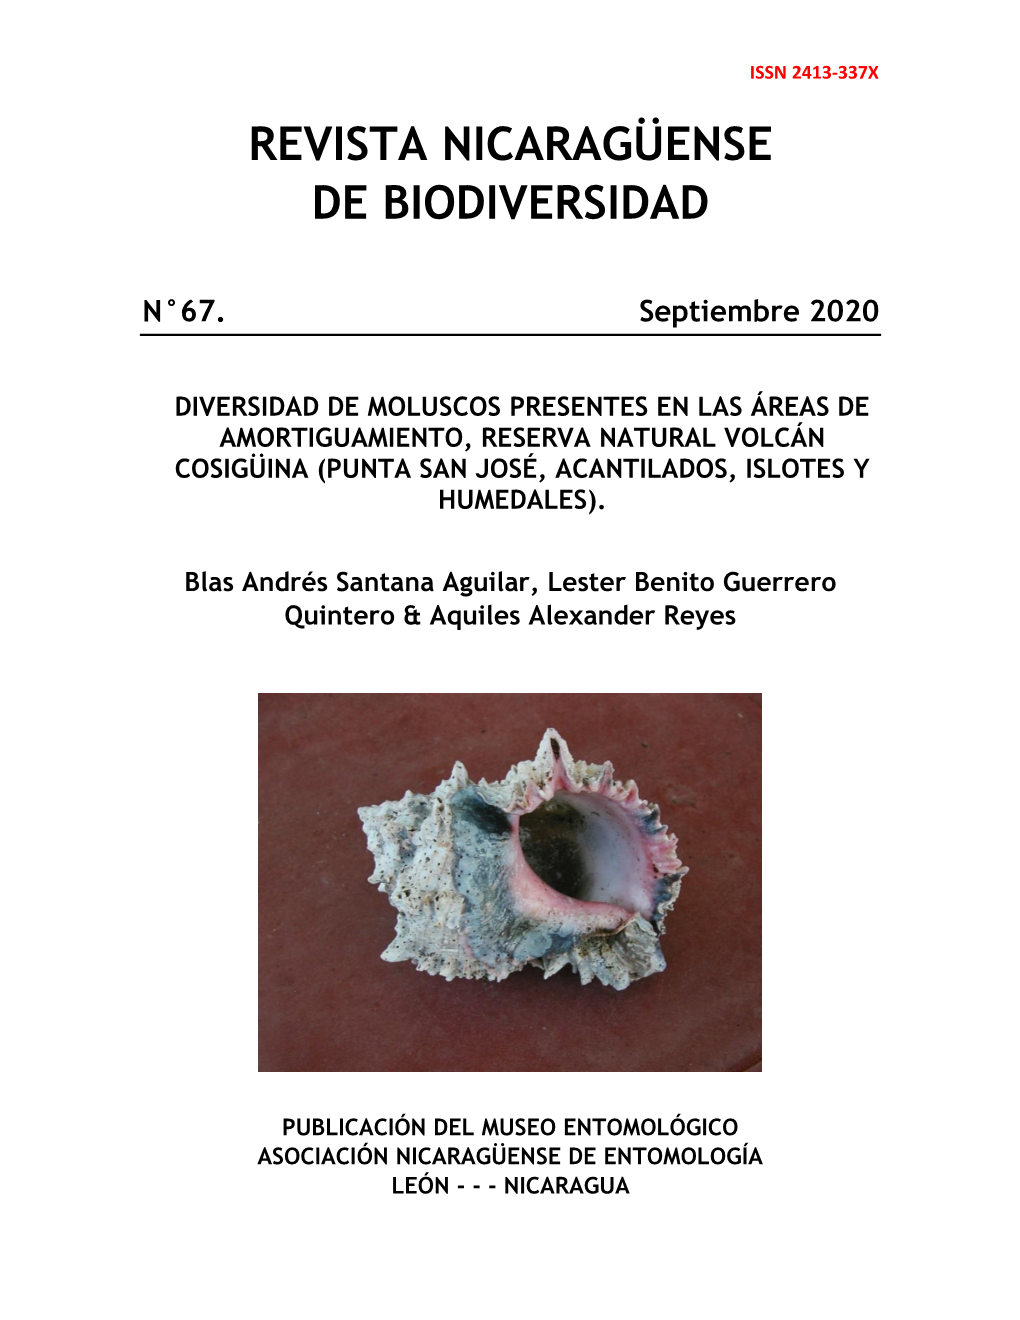 Diversidad De Moluscos Presentes En Las Áreas De Amortiguamiento, Reserva Natural Volcán Cosigüina (Punta San José, Acantilados, Islotes Y Humedales)